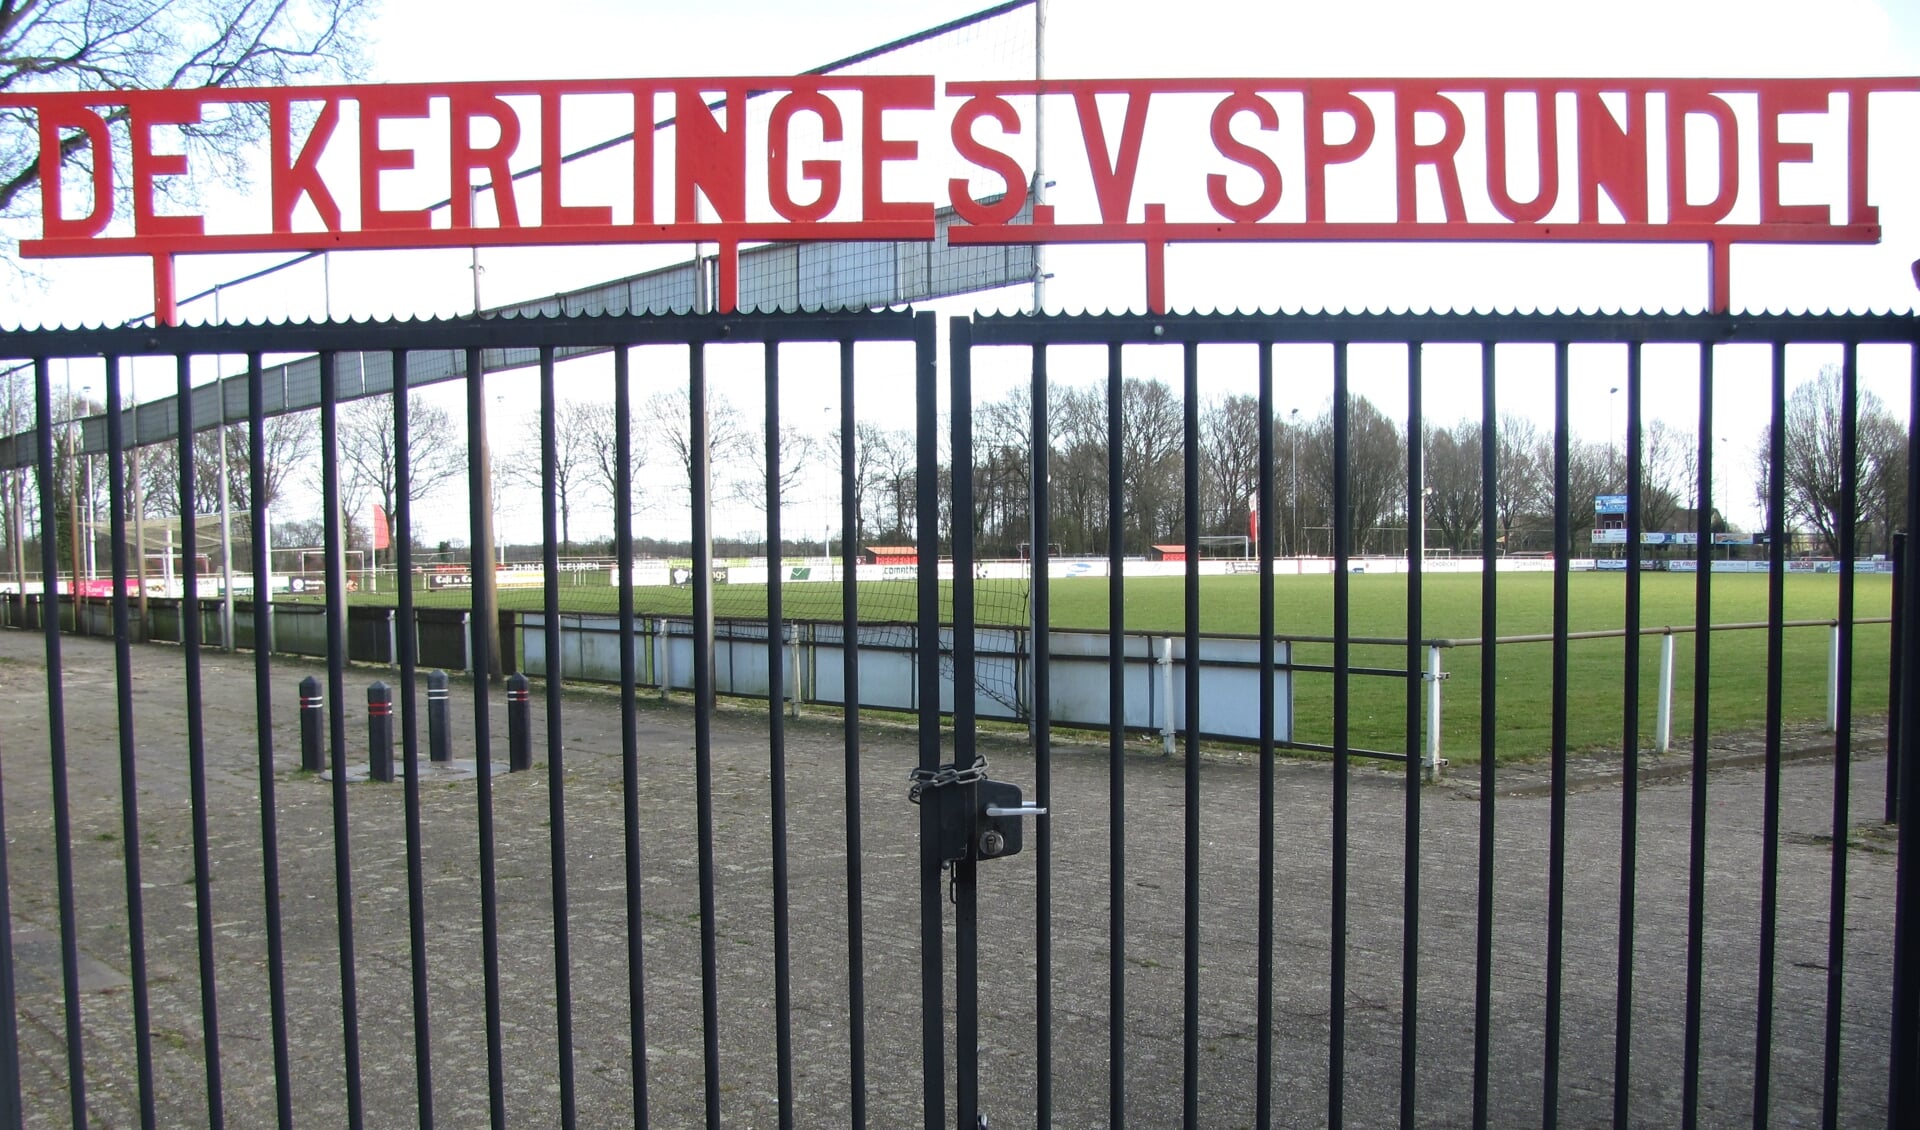 Sportpark De Kerlinge, thuishaven van SV Sprundel aan de Hertogstraat, is dicht. Er wordt voorlopig niet meer gevoetbald. Het seizoen is voorbij. 